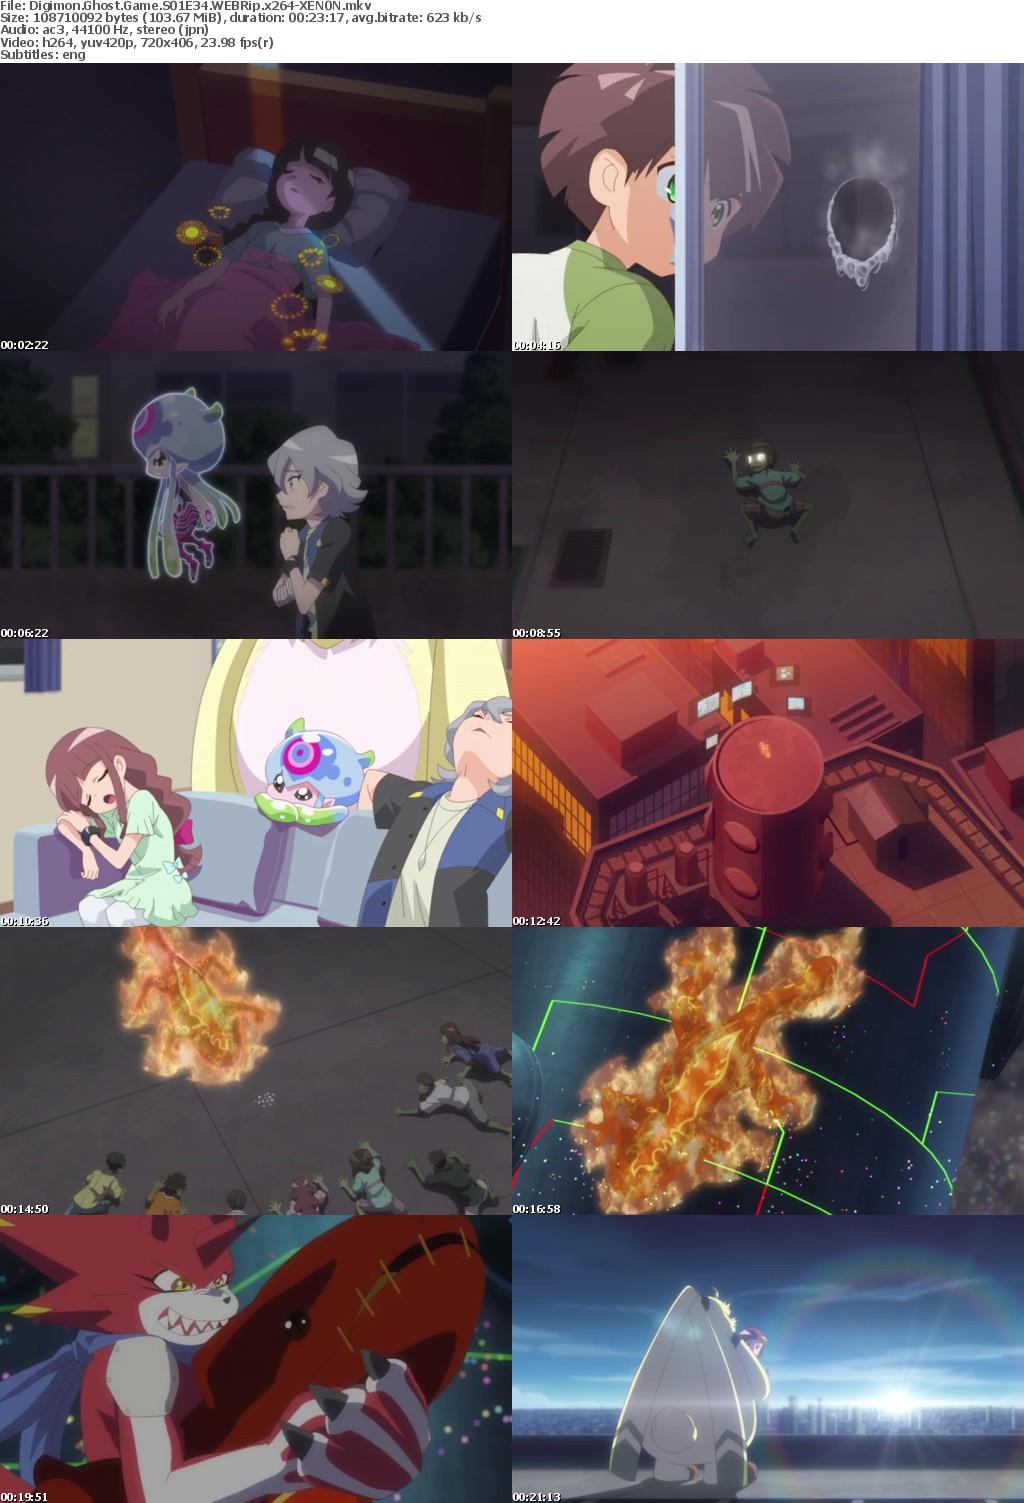 Digimon Ghost Game S01E34 WEBRip x264-XEN0N